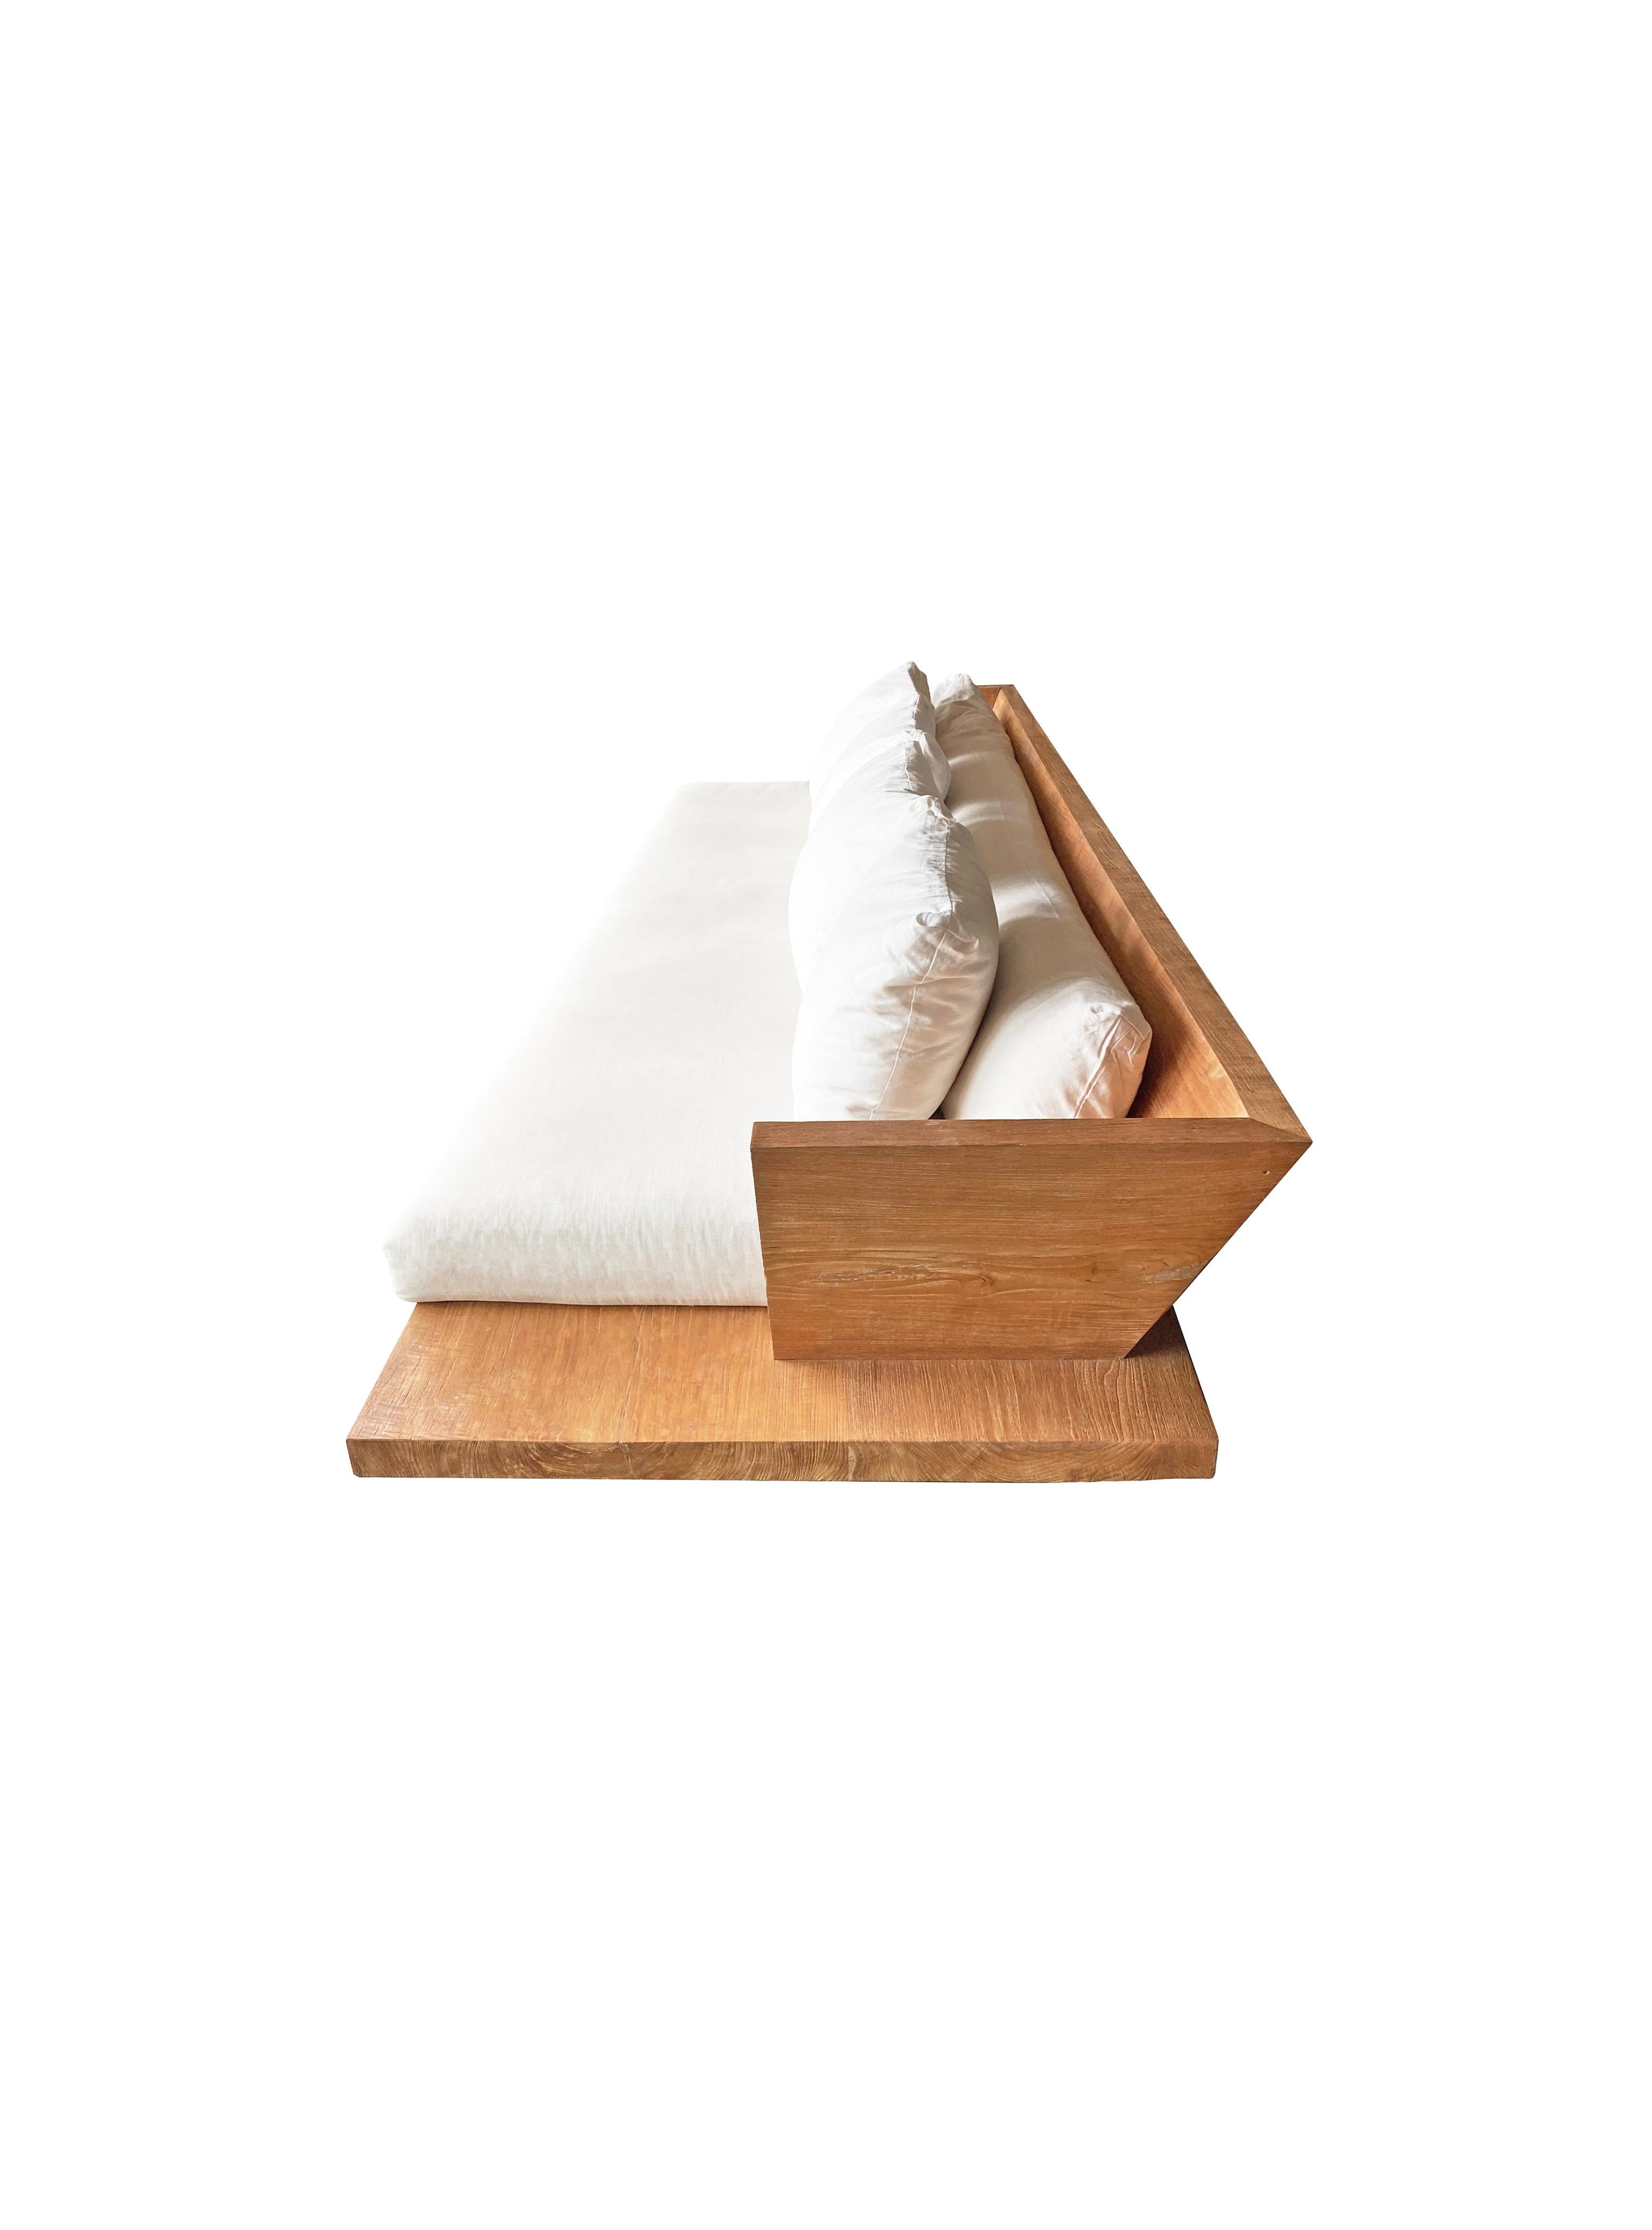 Ce canapé moderne en bois de teck présente une grande base en dalles de bois de teck, un dossier et est surélevé par deux blocs de bois de teck peu profonds. Le canapé est livré avec des coussins qui s'étendent sur toute la longueur du dossier et de